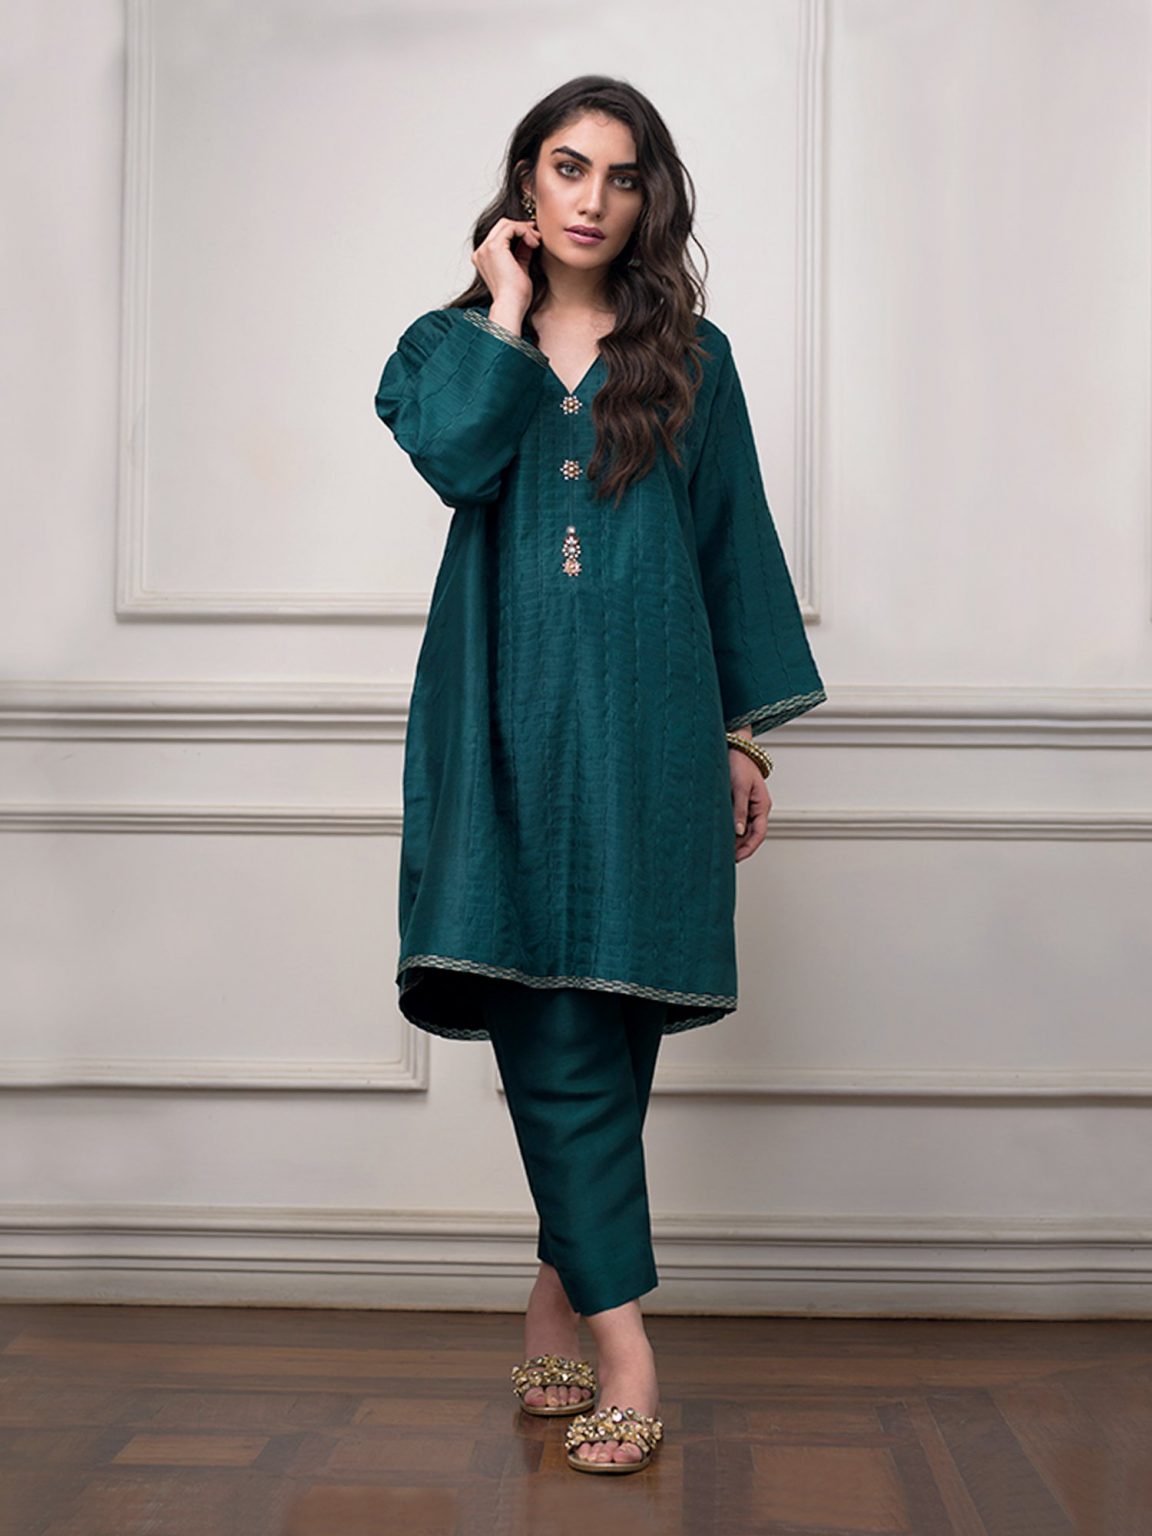 Emerald green silk Pakistani wedding dress by Misha Lakhani 2018 ...